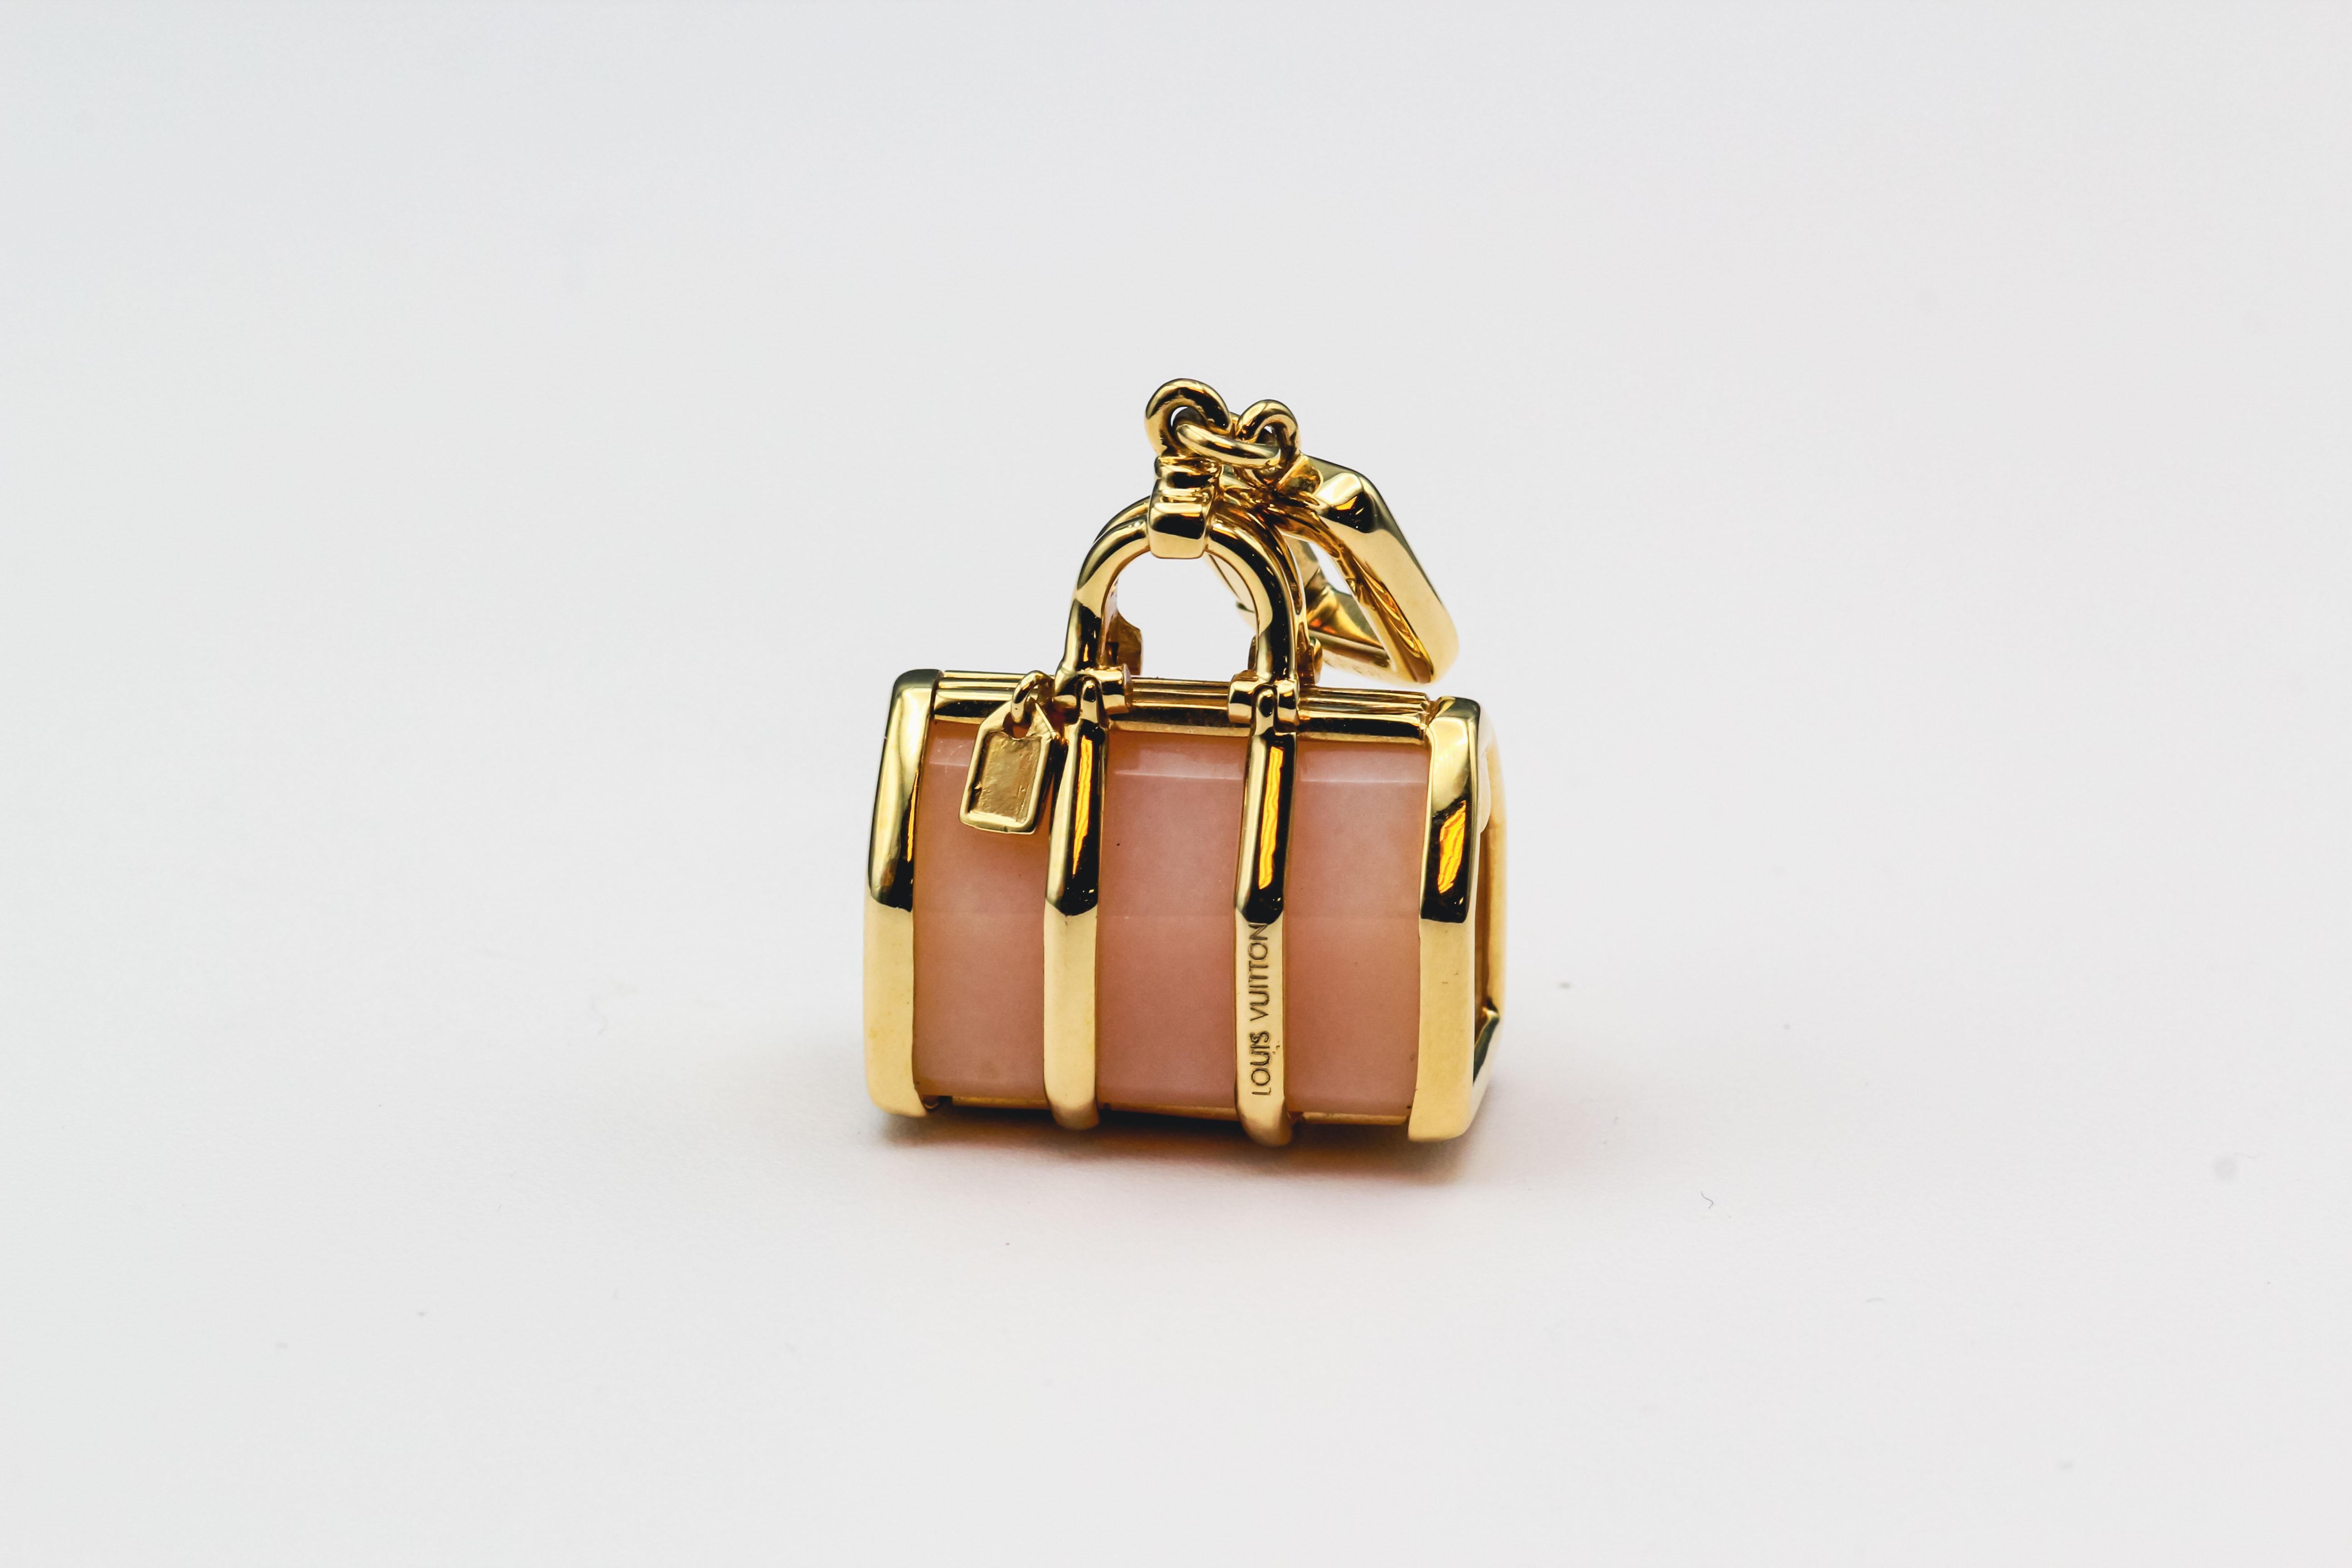 Élevez votre style avec le pendentif à breloques pour sac Keepall en or jaune 18 carats de Louis Vuitton Contemporary. Cette pièce exquise allie parfaitement le luxe moderne à l'élégance intemporelle de Louis Vuitton, mettant en valeur le dévouement